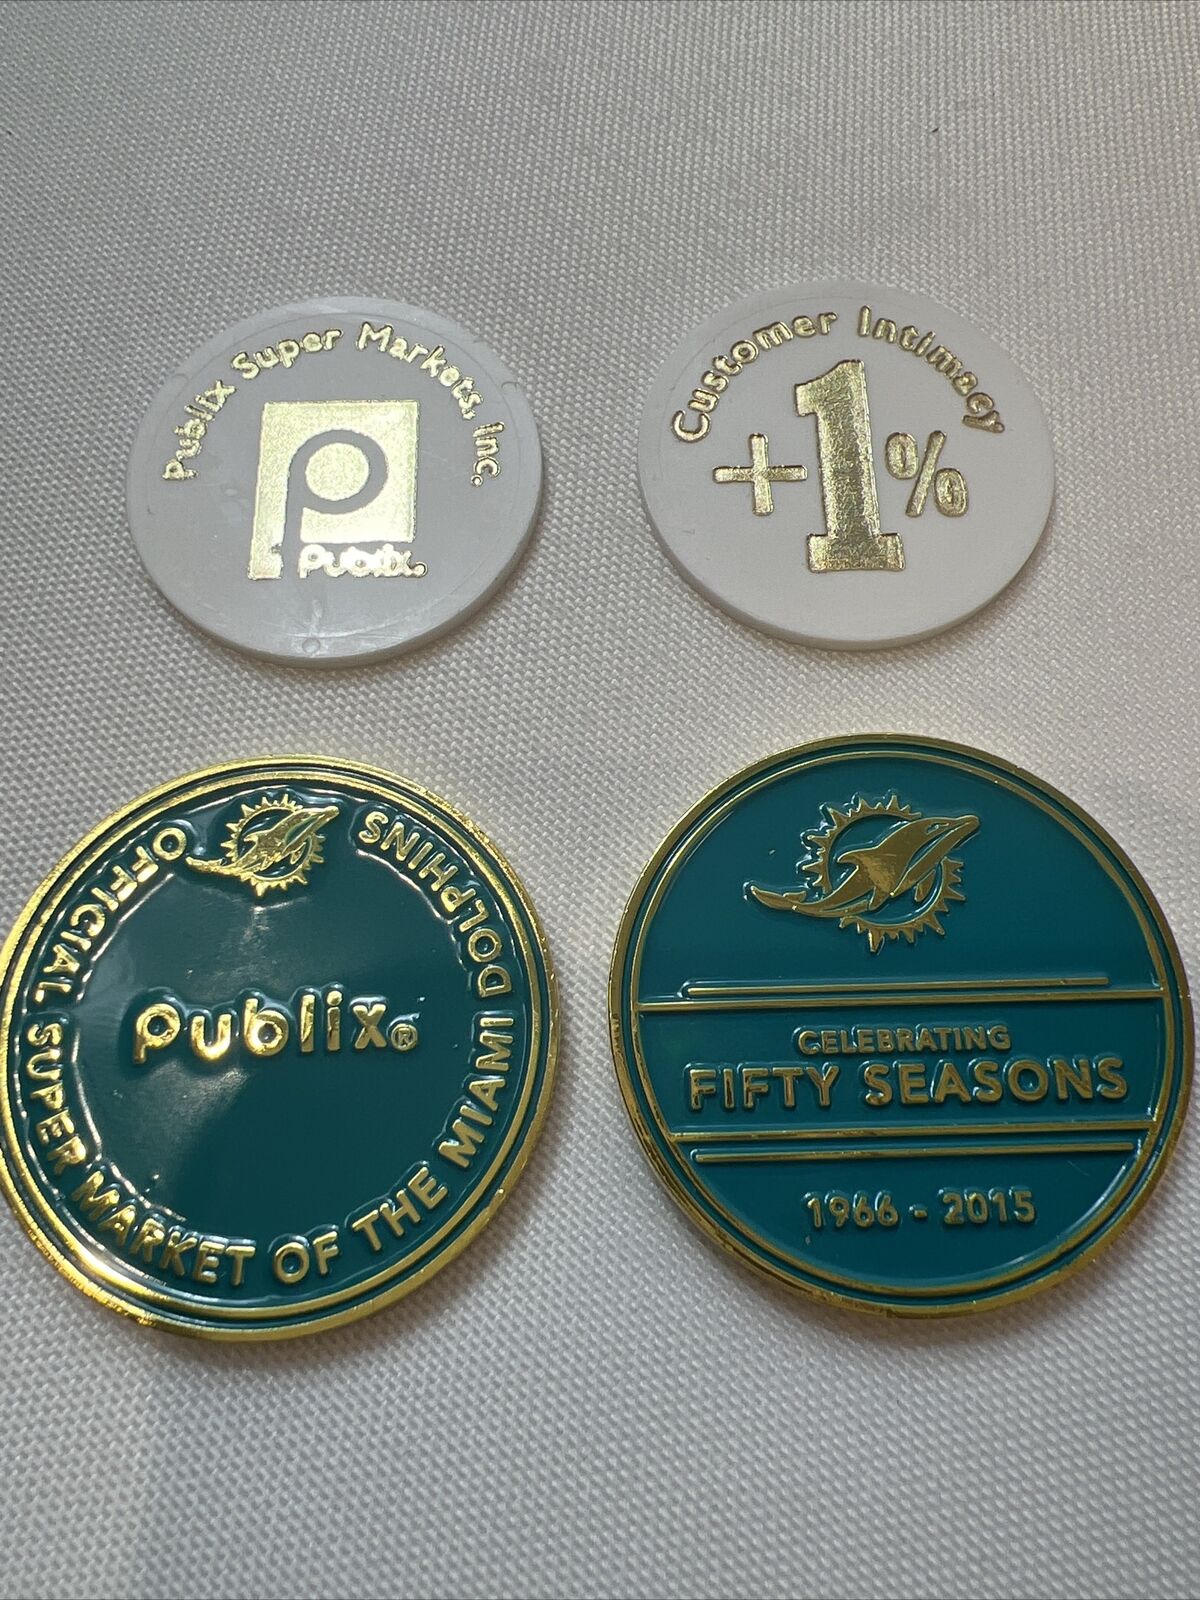 Publix Super Market Publix pin Publix Set of Two 1% tokens & 2 Publix tokens